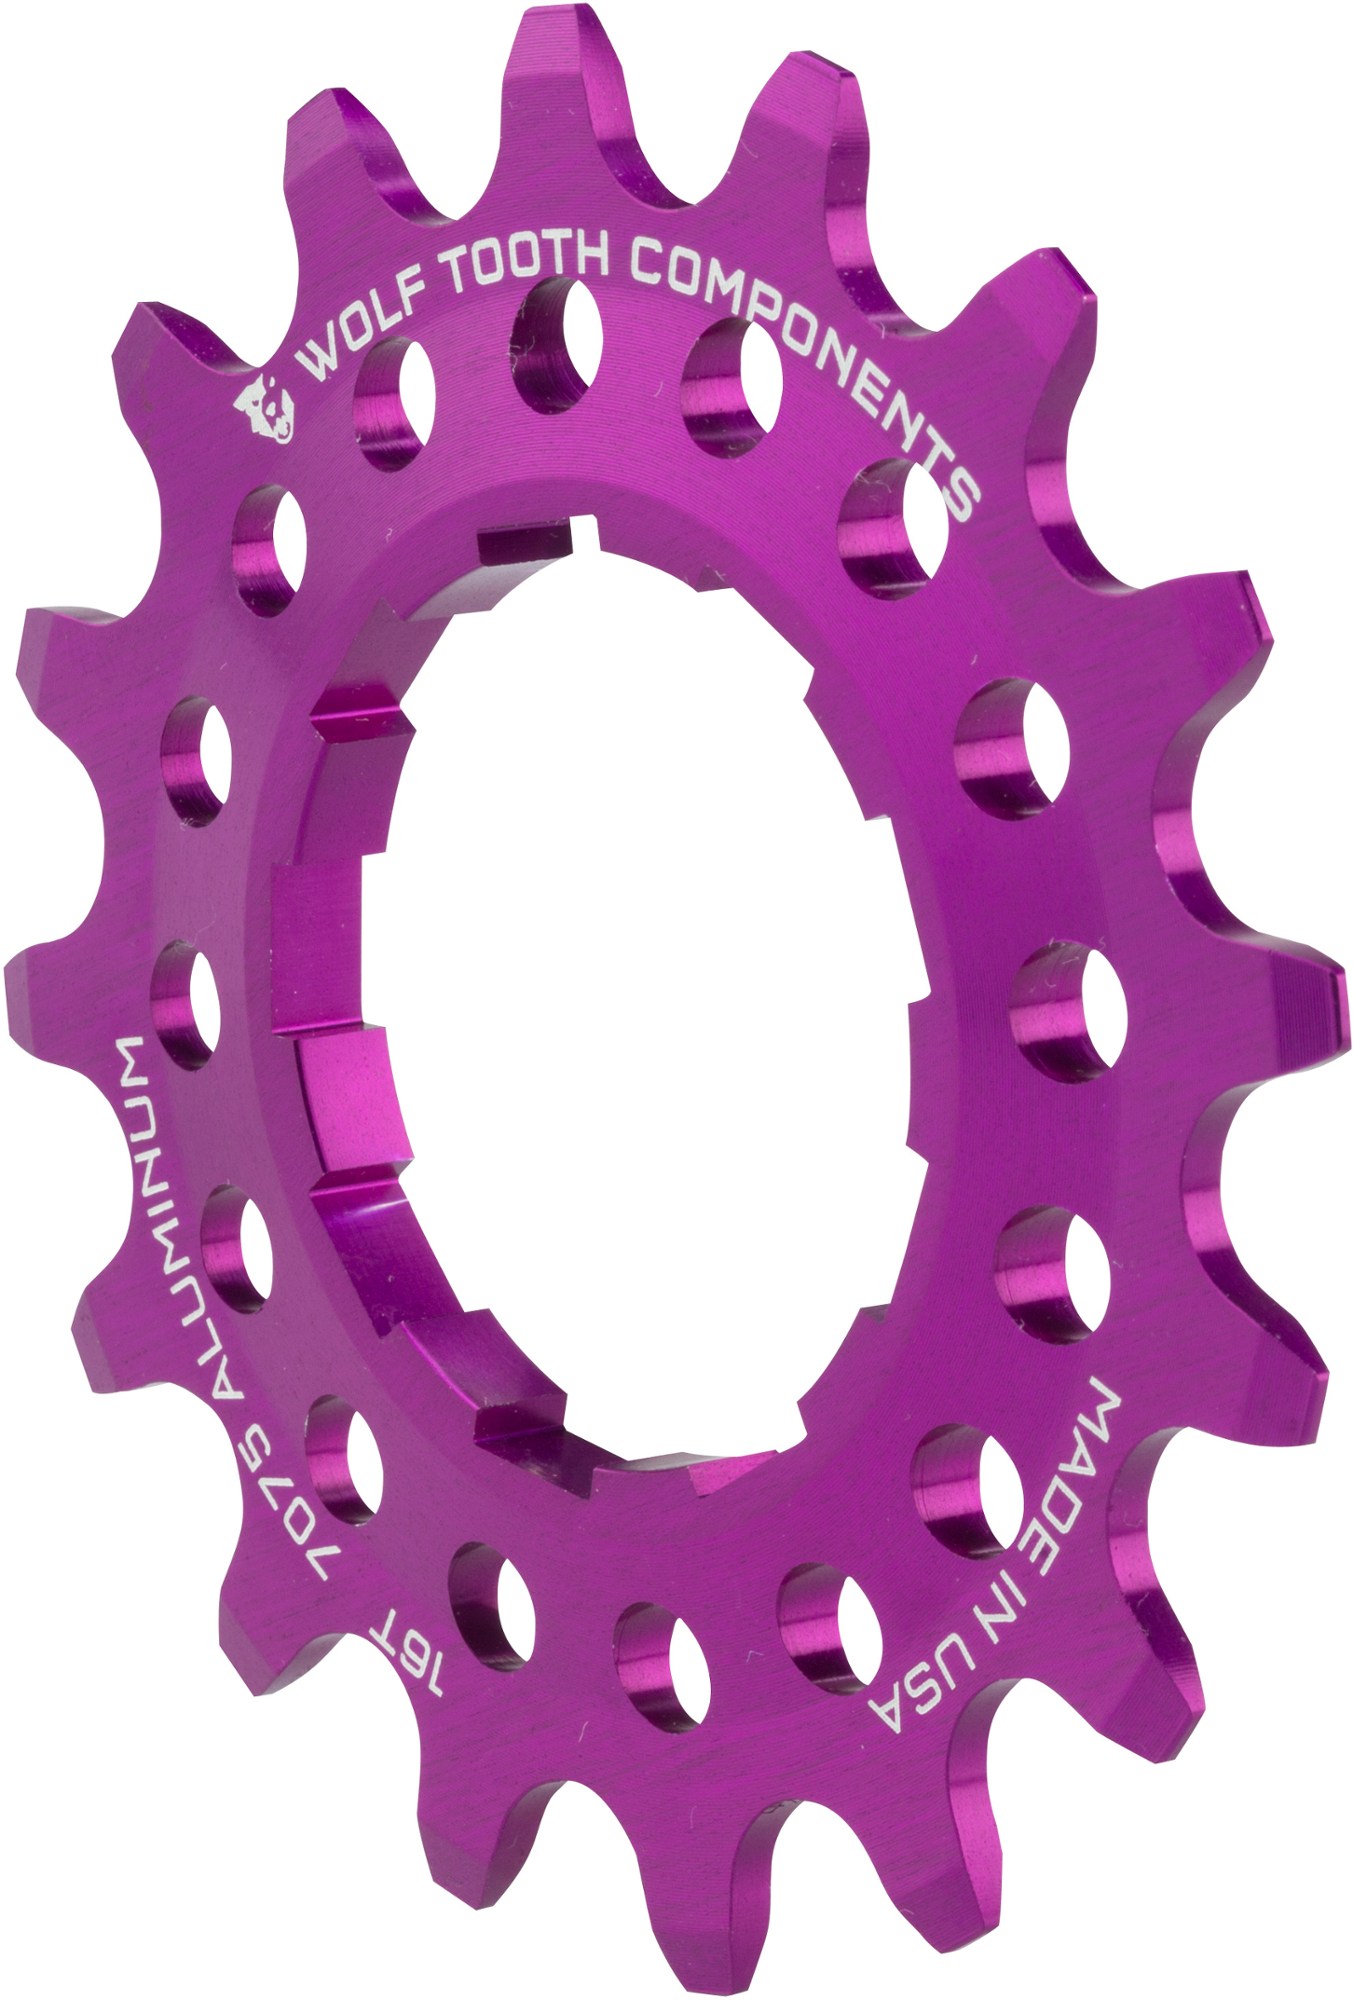 Односкоростной алюминиевый винтик Wolf Tooth Components, фиолетовый